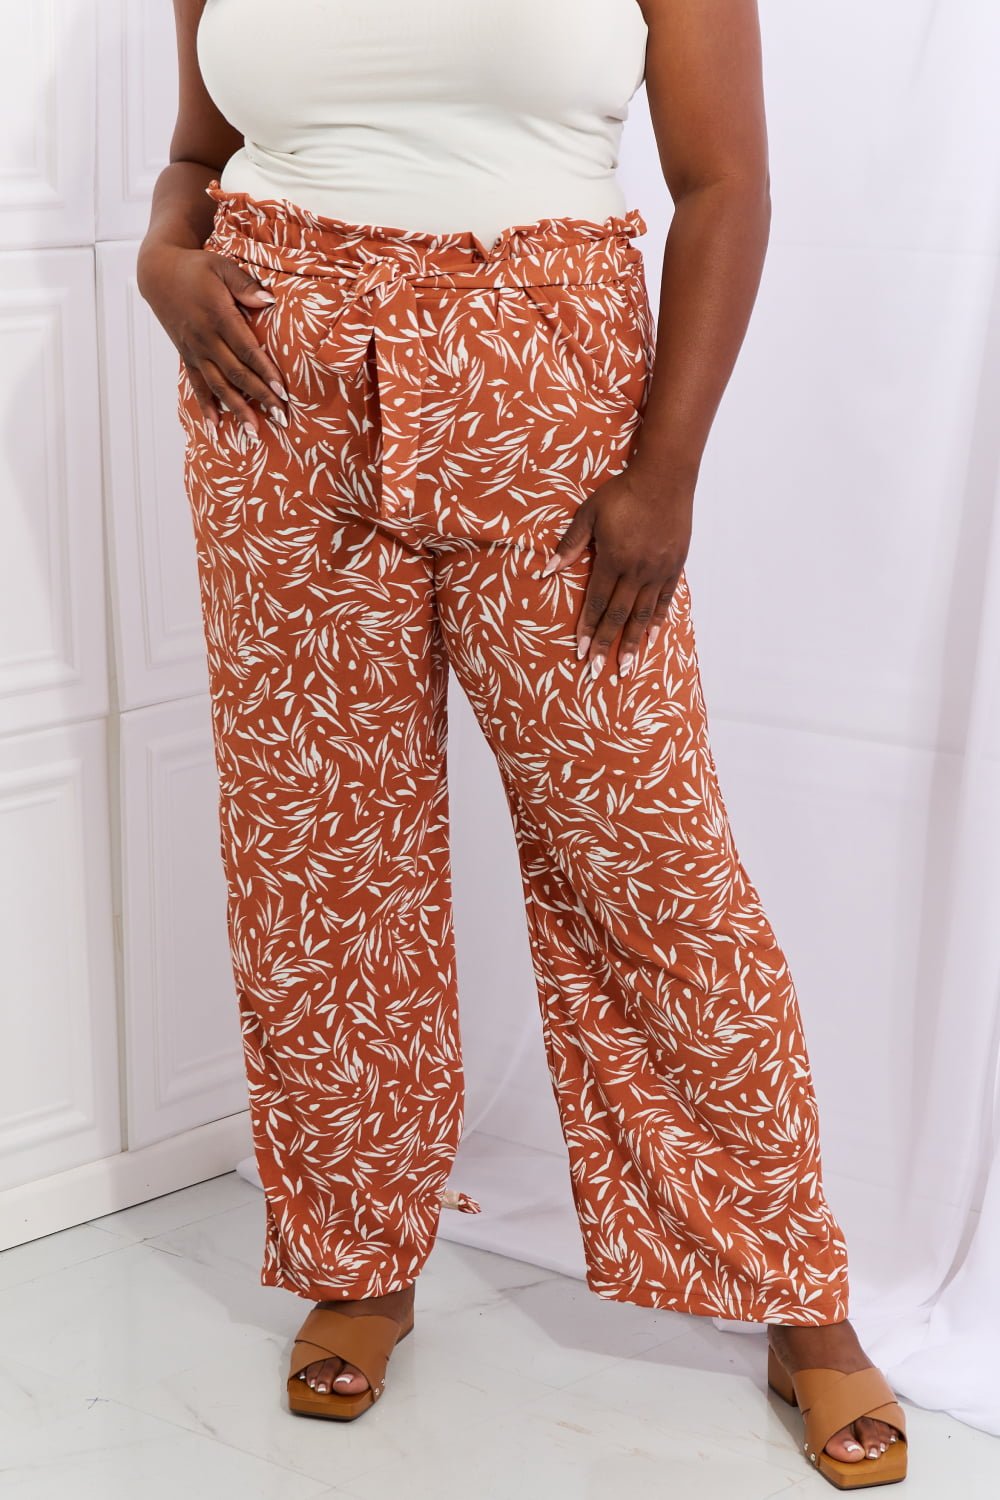 Geometric Print Belted Pants in Red OrangePantsHeimish